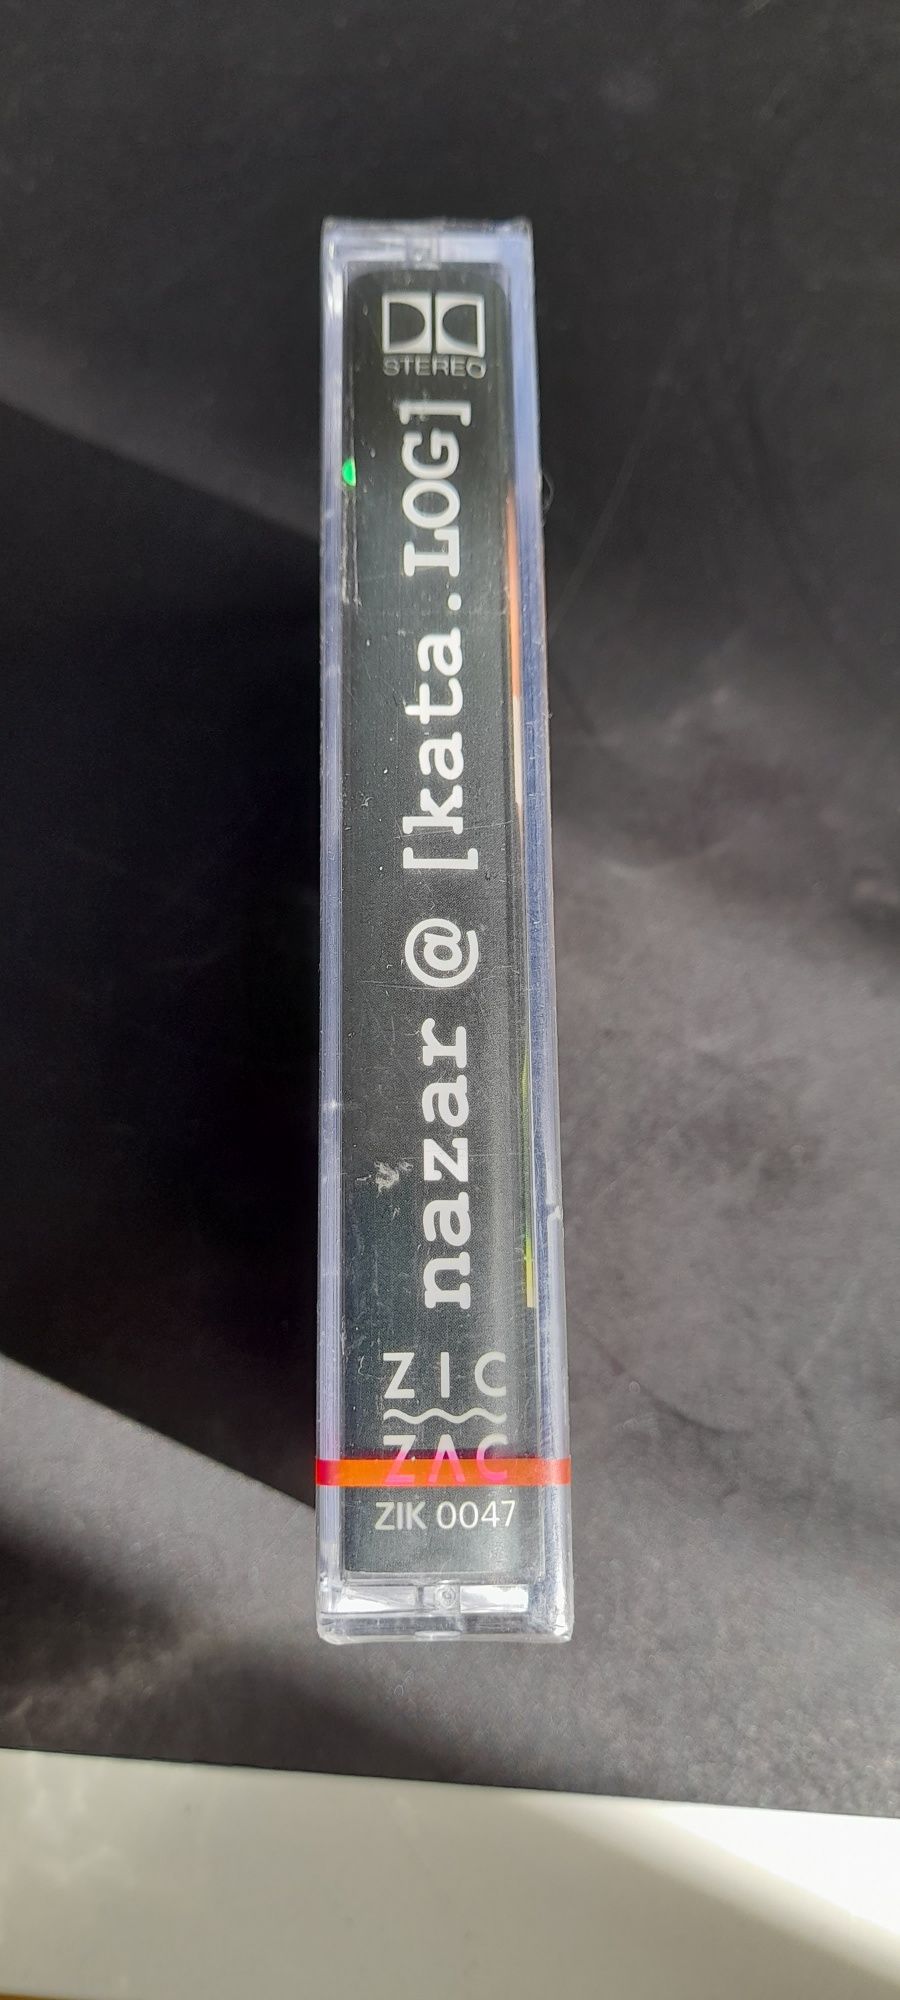 Nazar " [kata.LOG]" - kaseta 1996